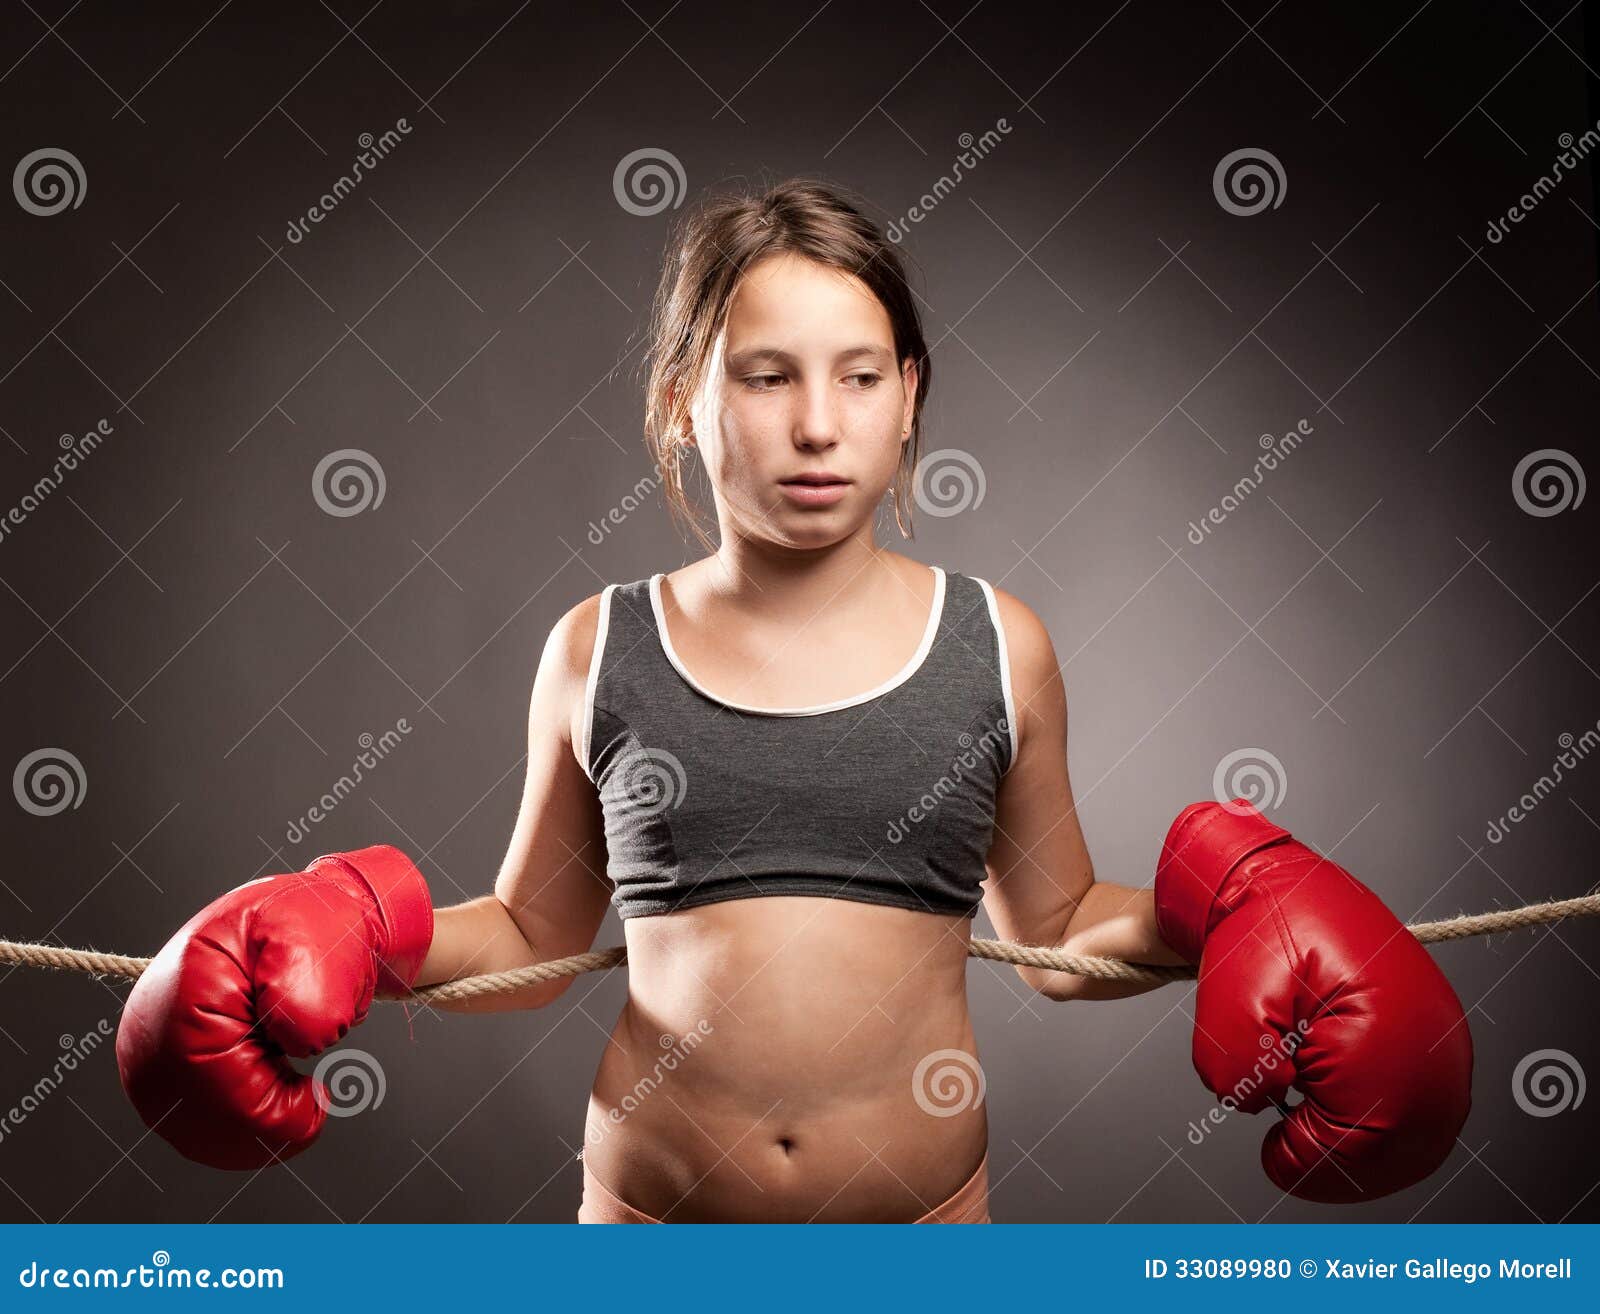 Янг девушка. Девочка боксер. Подросток в боксерских перчатках. Маленькая боксерка. Маленькая девочка боксерша.